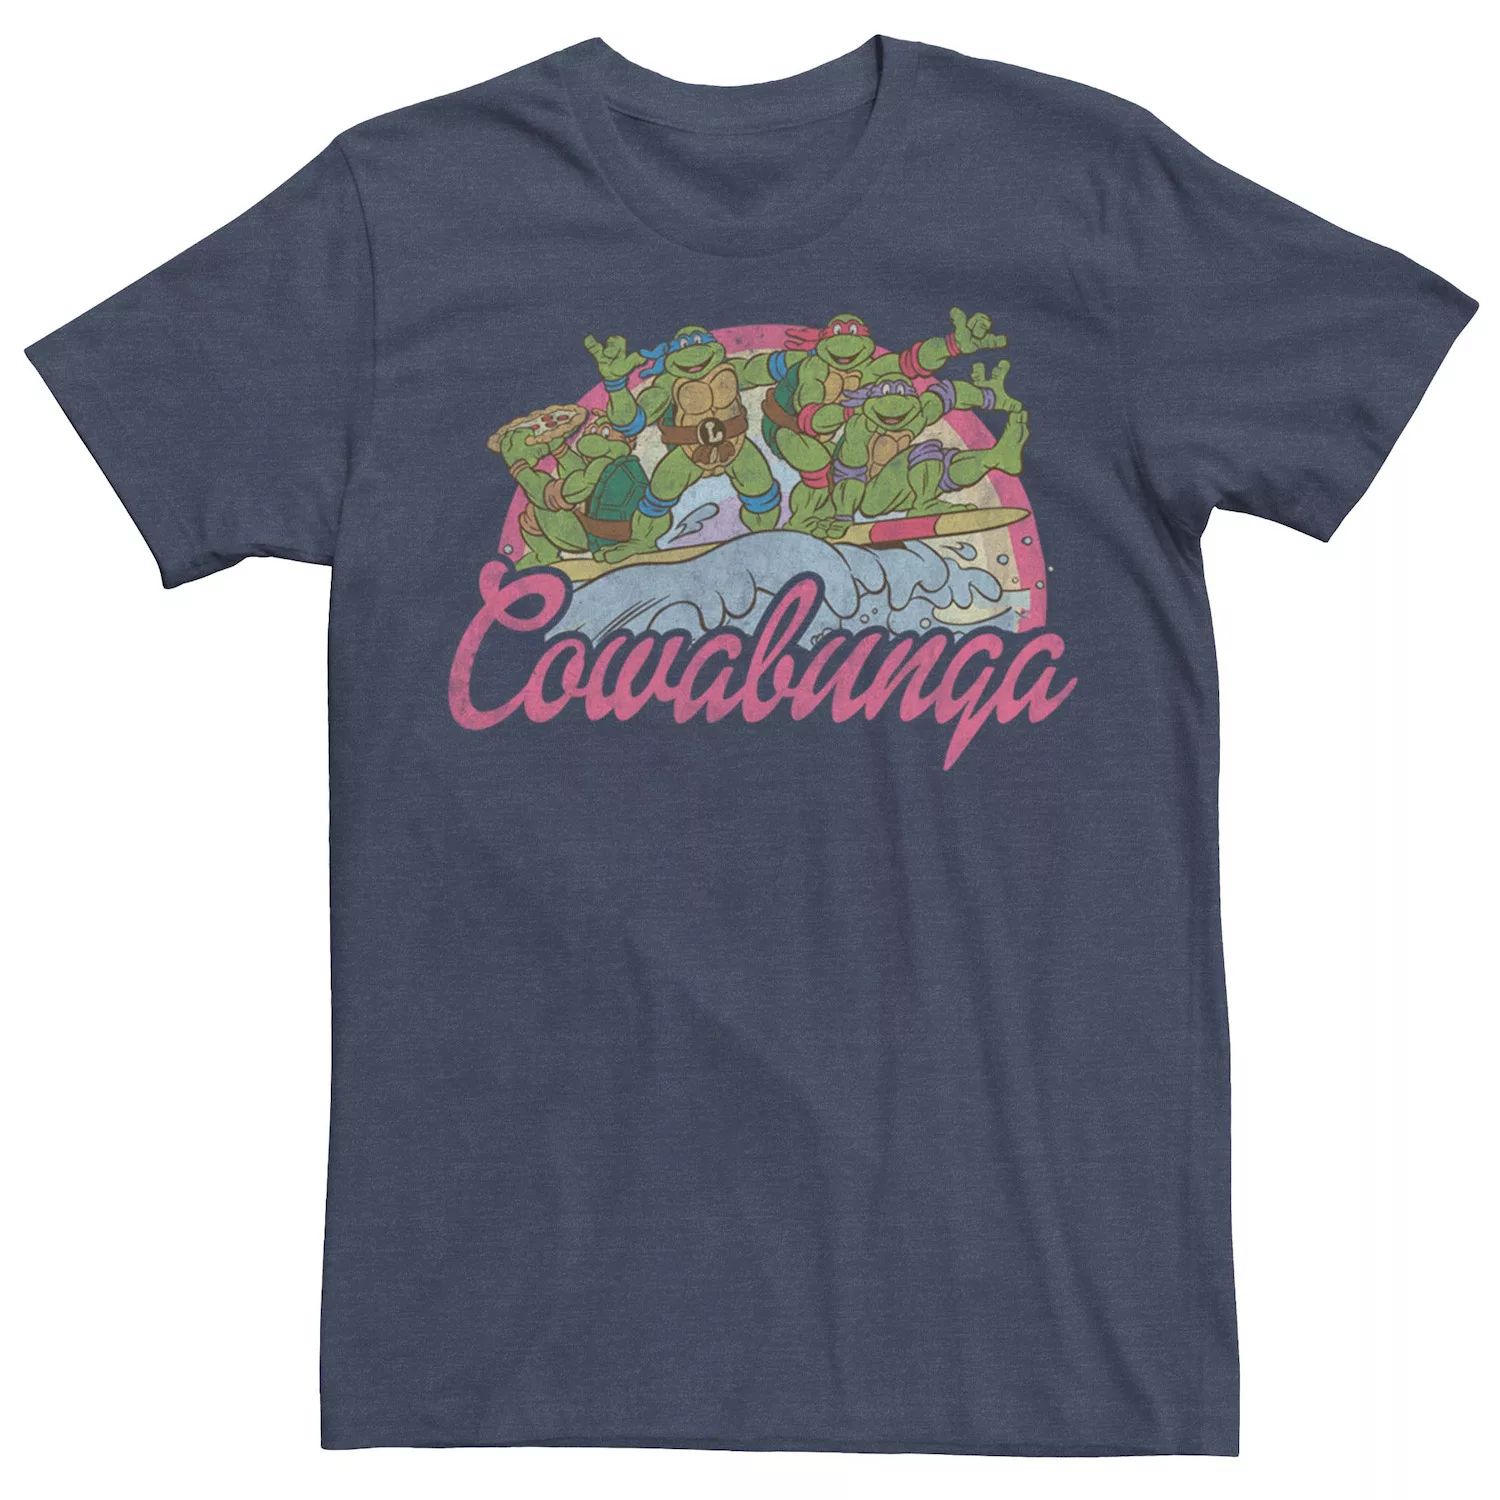 Мужская футболка для серфинга Teenage Mutant Ninja Turtles Cowabunga Licensed Character teenage mutant ninja turtles cowabunga collection ps4 английская версия